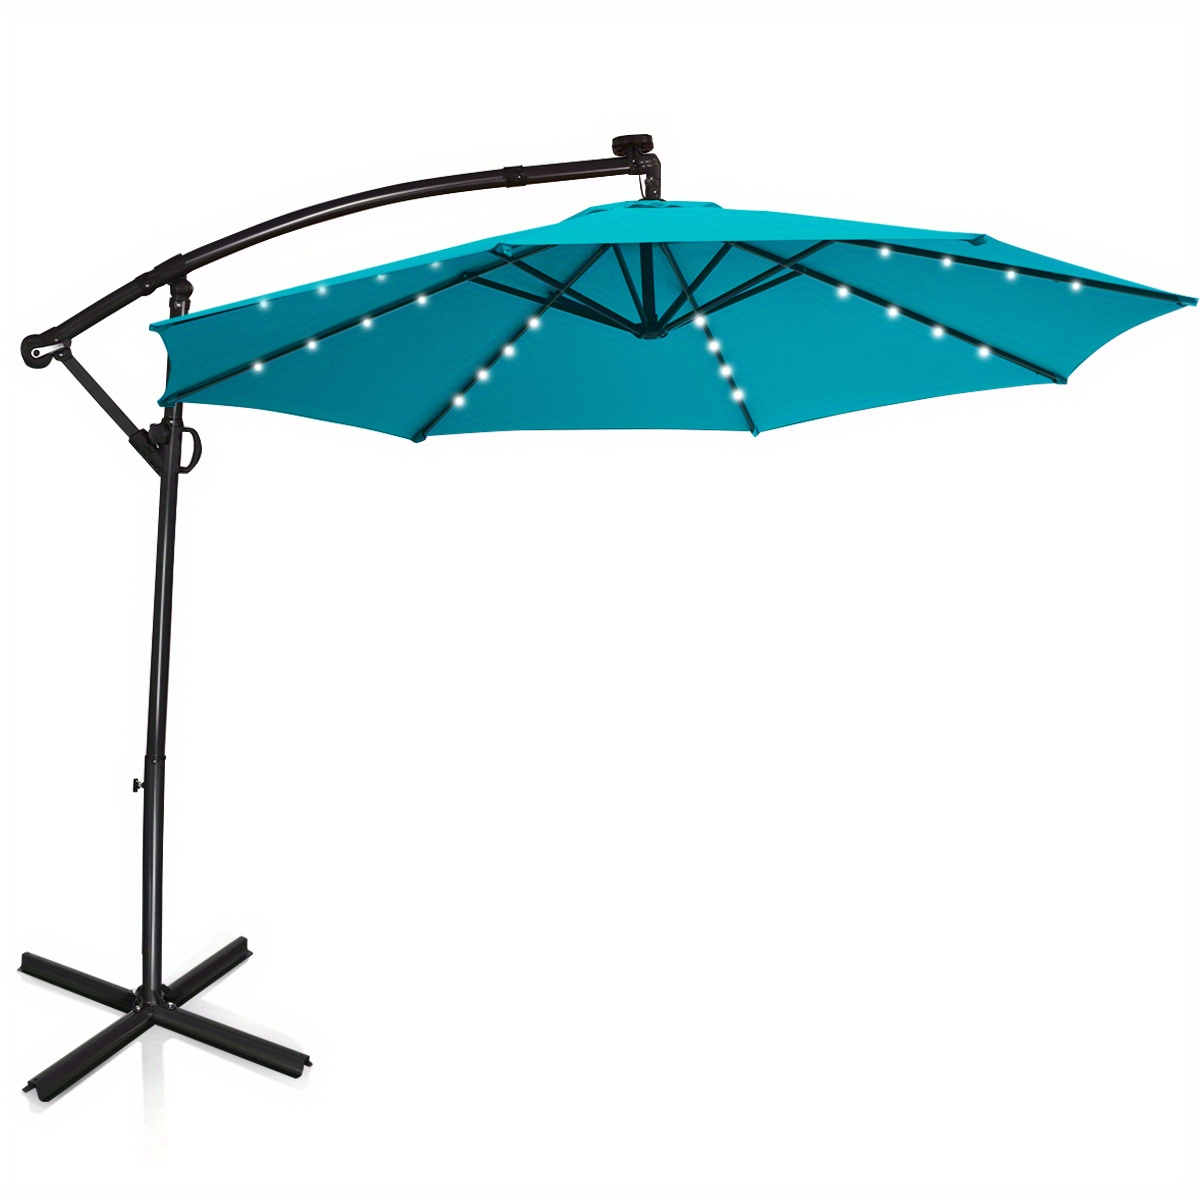 

Lifezeal 10ft Patio Offset Umbrella Solar Powered Led 360° Rotation Aluminum Turquoise